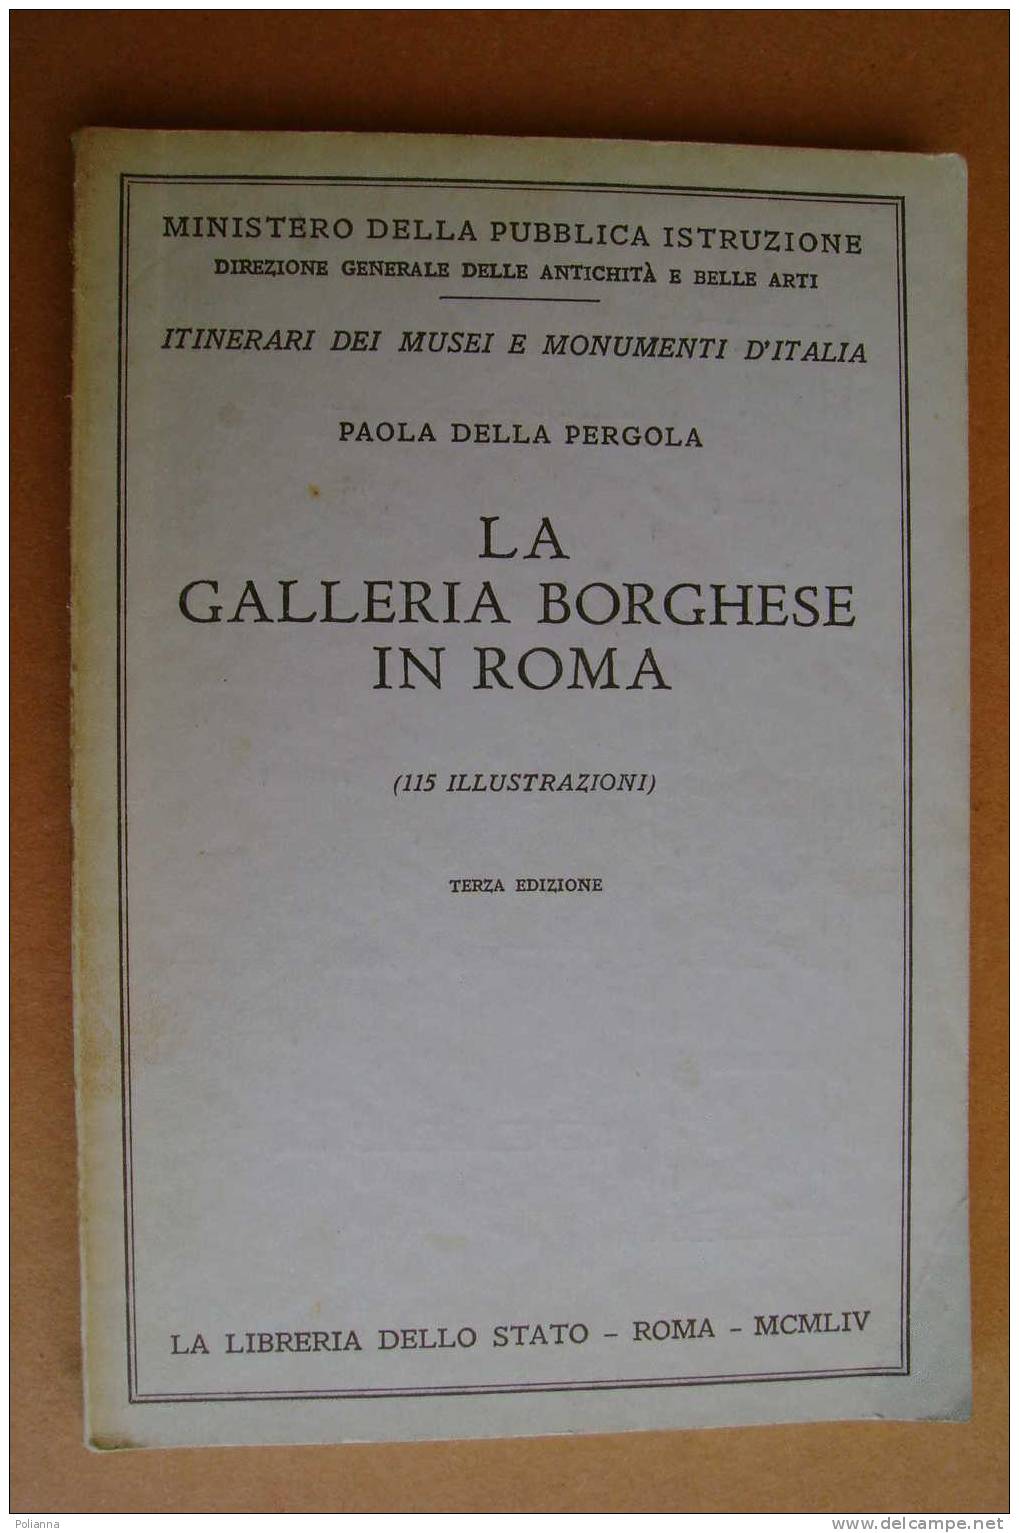 PAO/38 Della Pergola LA GALLERIA BORGHESE IN ROMA Ist.Poligrafico 1954 - Kunst, Antiquitäten